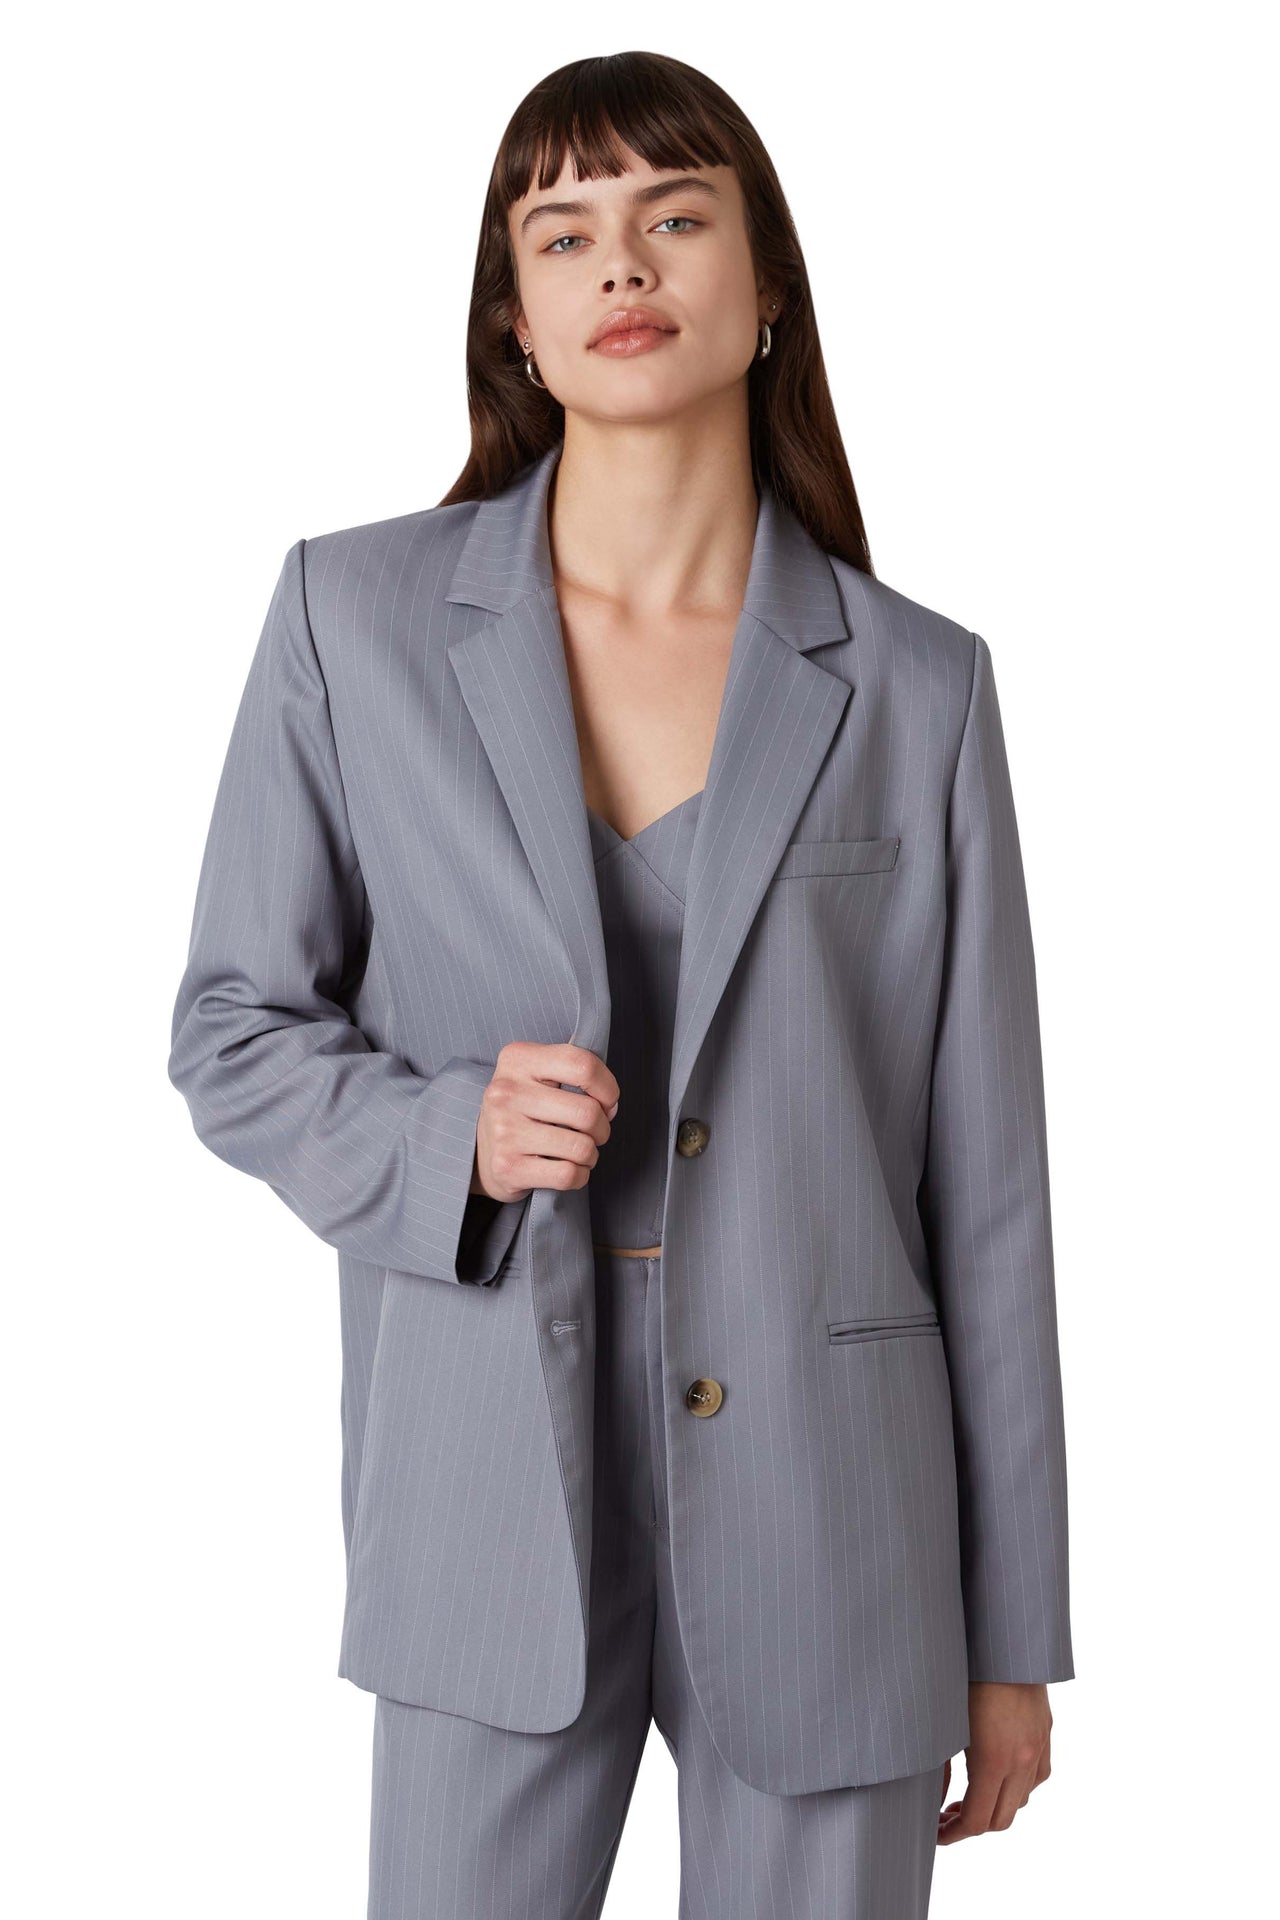 Felix Grey Blazer, Blazer Jacket by NIA | LIT Boutique